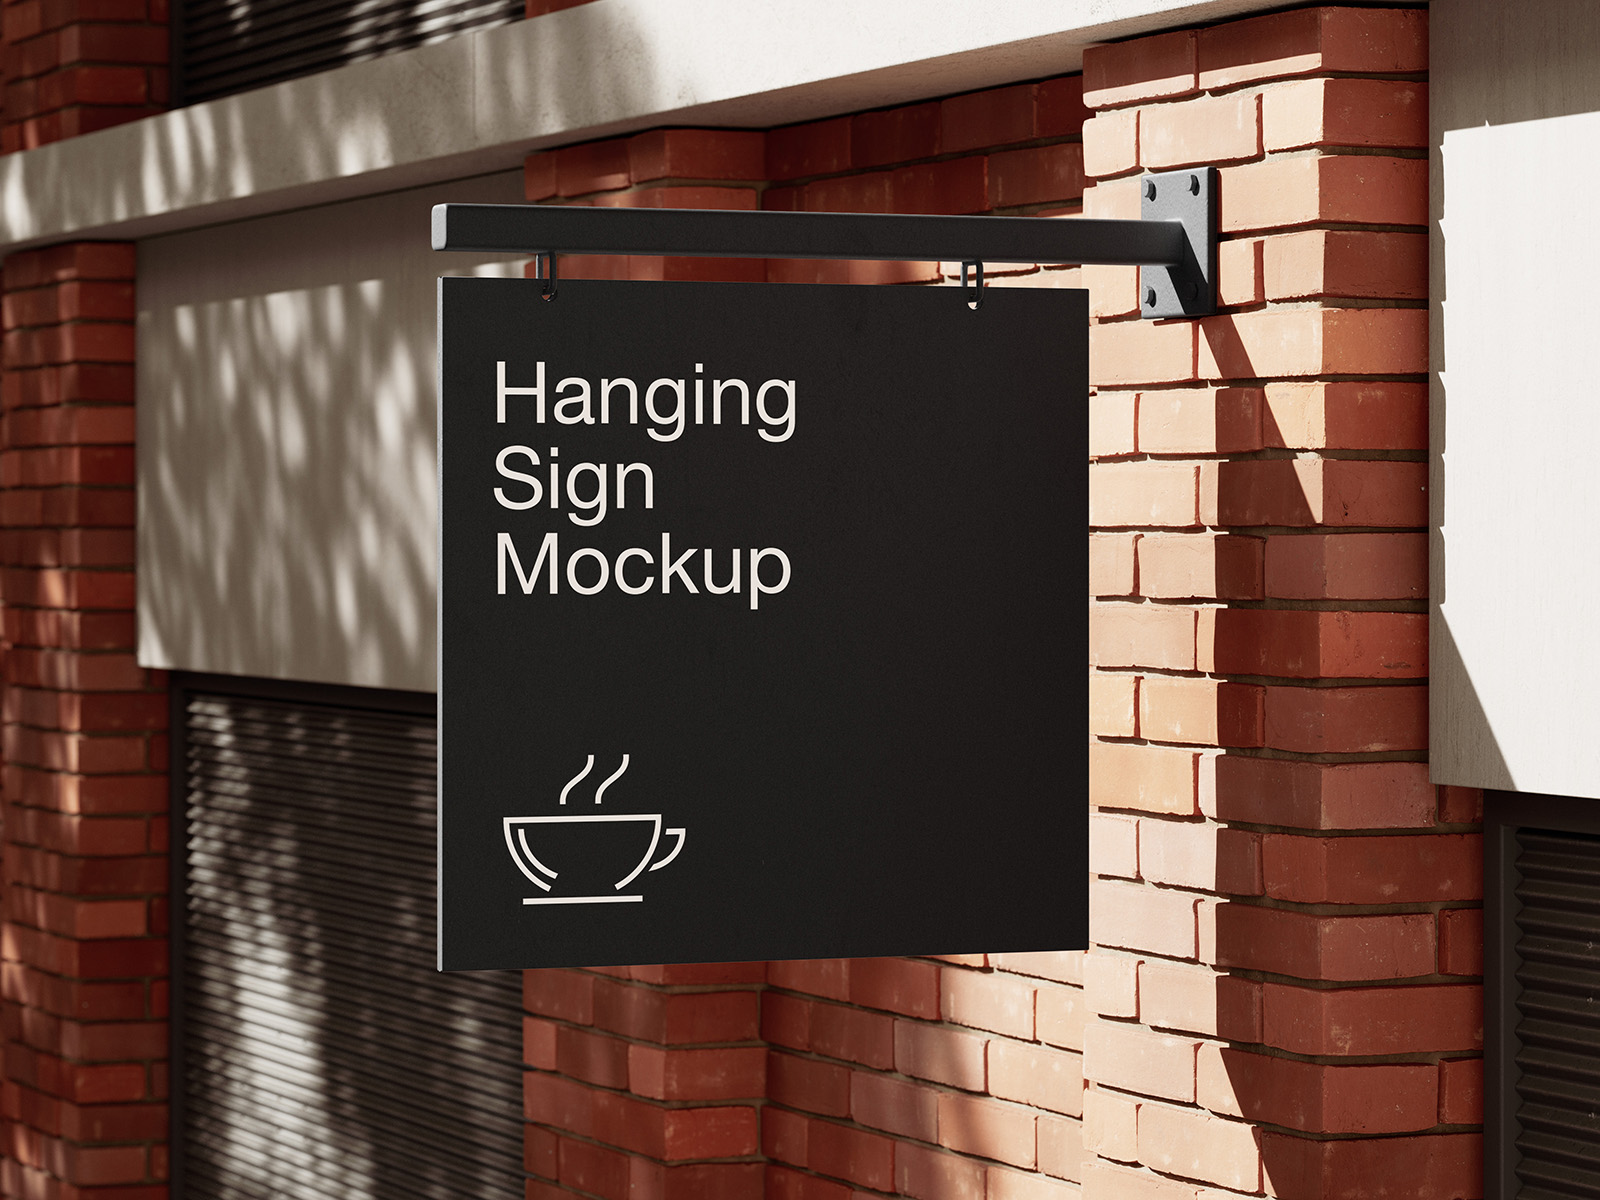 Hanging sign on brick wall mockup